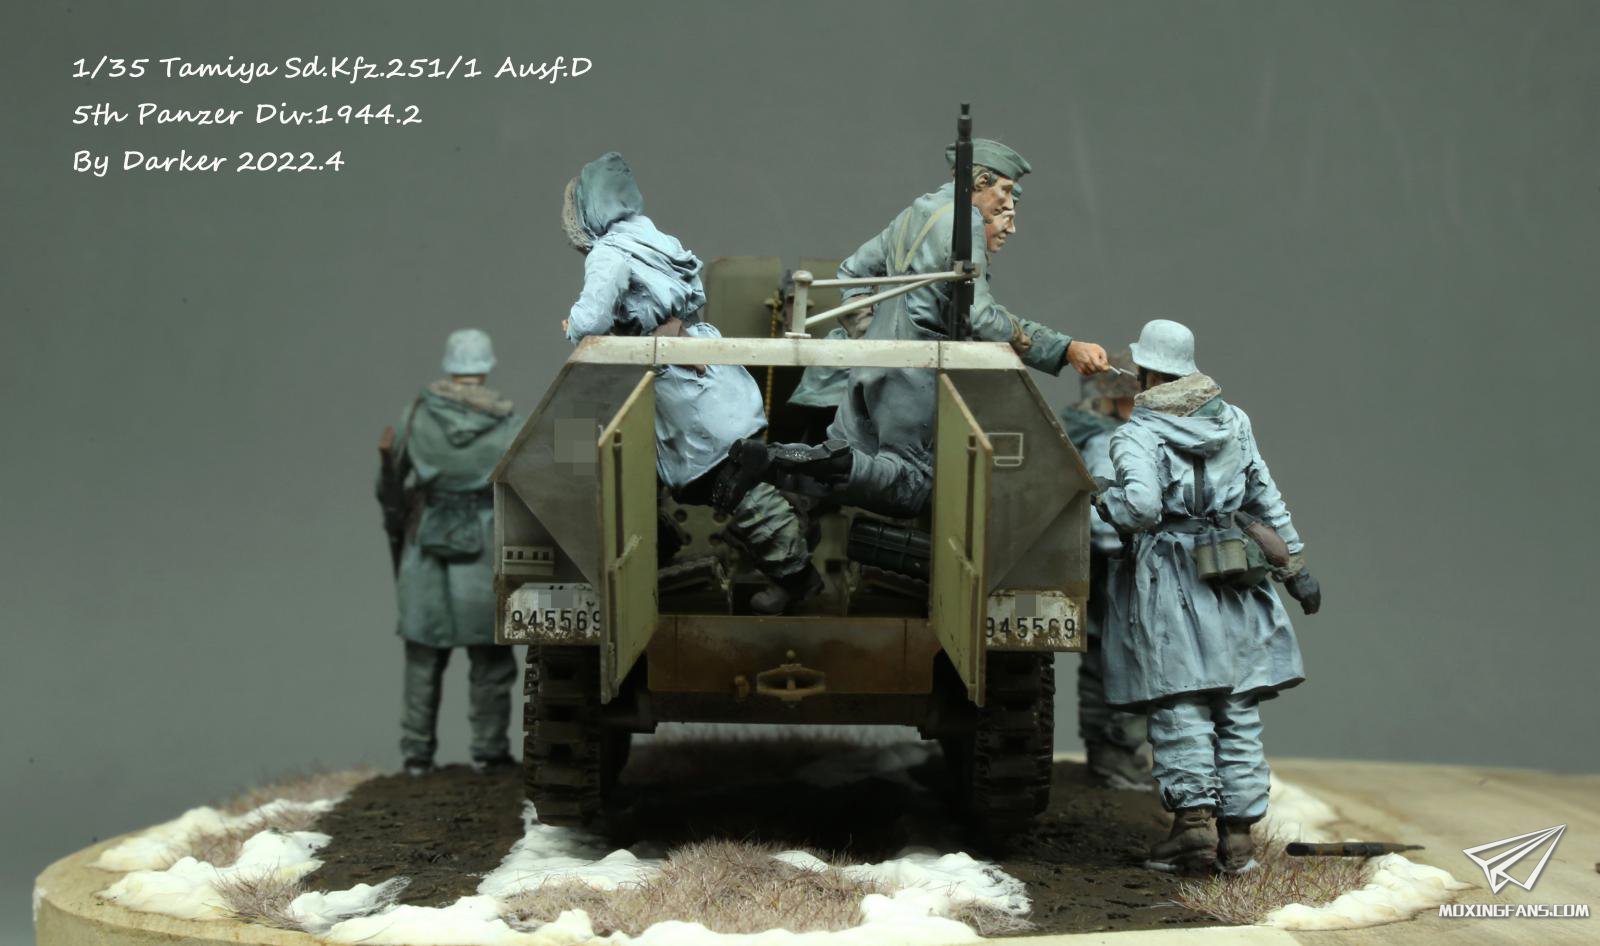 1/35 警戒中的小憩——田宫Sd.Kfz.251/1 Ausf.D及兵人_静态模型爱好者 